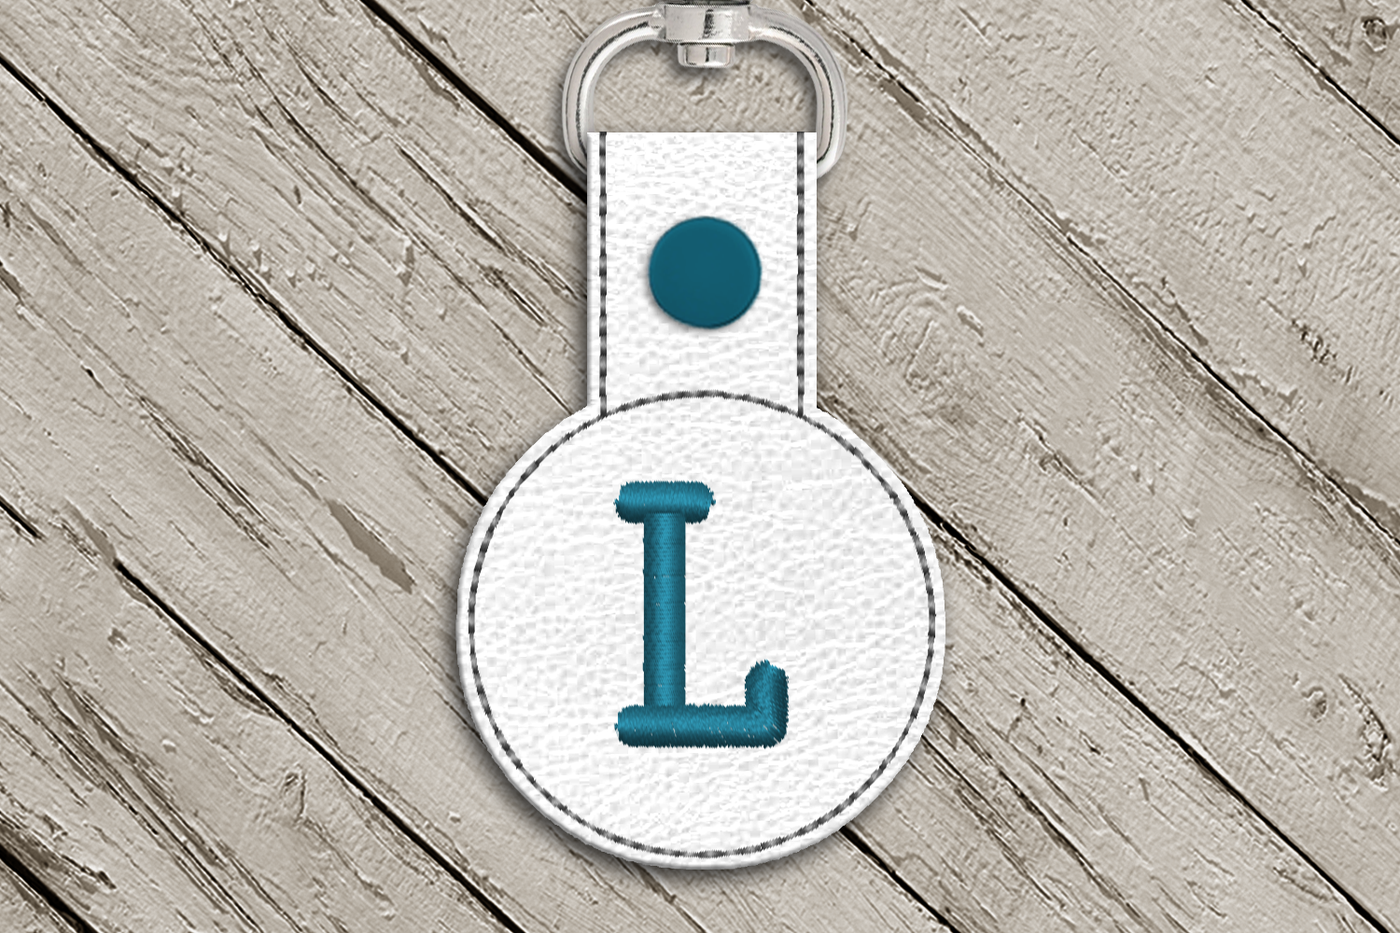 Letter L in the hoop key fob design